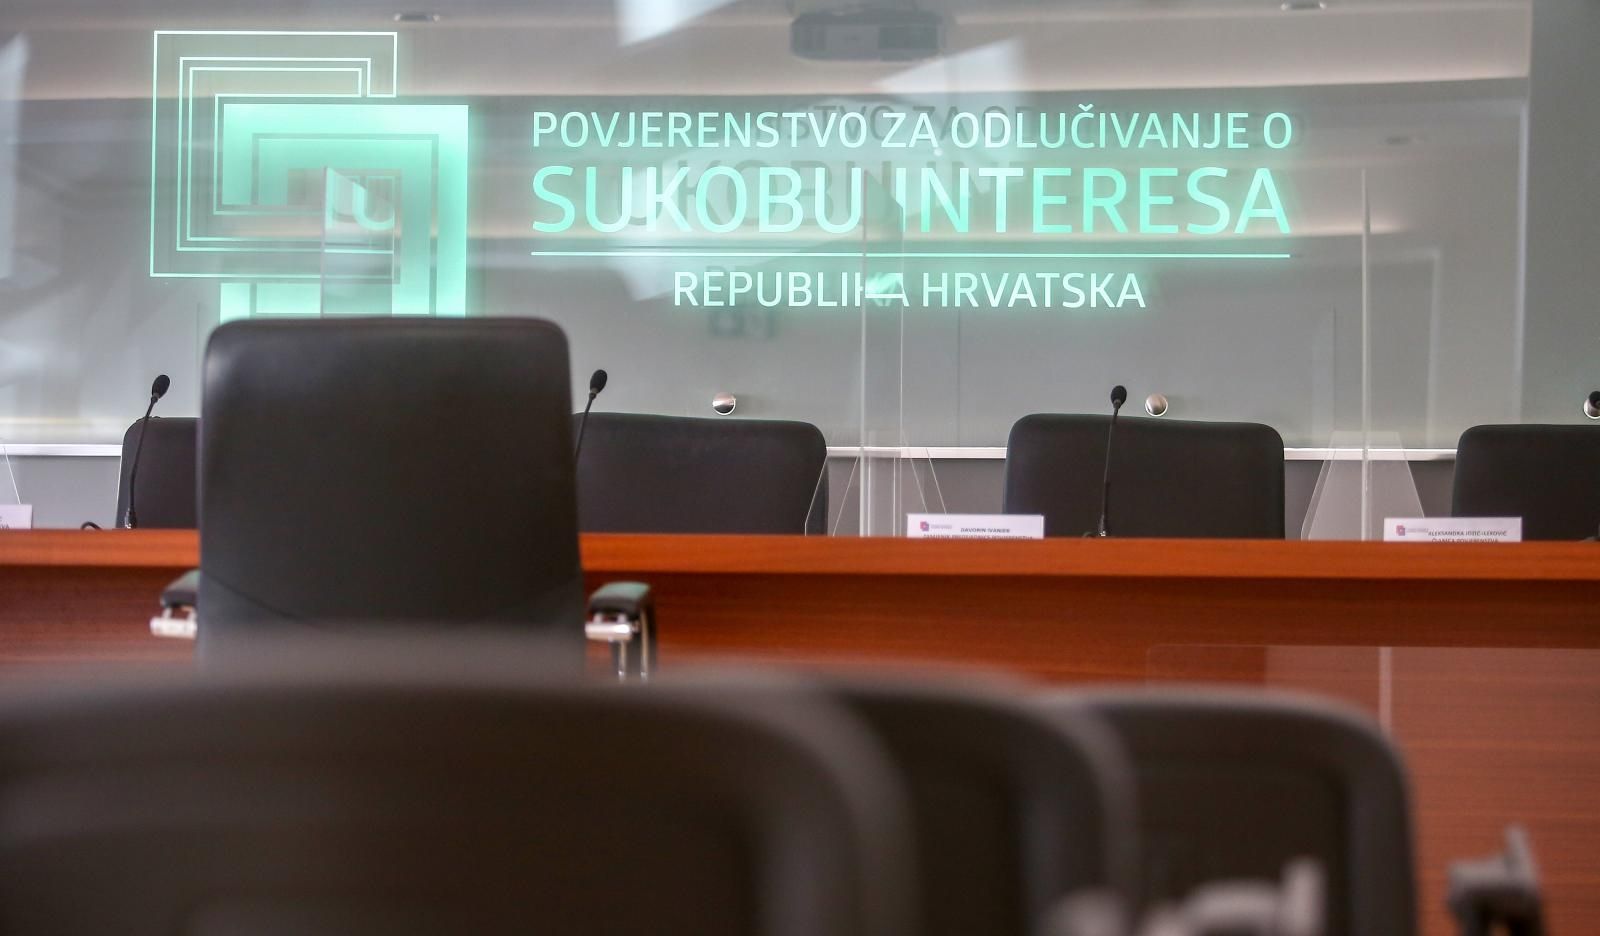 12.02.2021., Zagreb - Sjednica povjerenstva za odlucivanje o sukobu interesa. 
Photo: Matija Habljak/PIXSELL